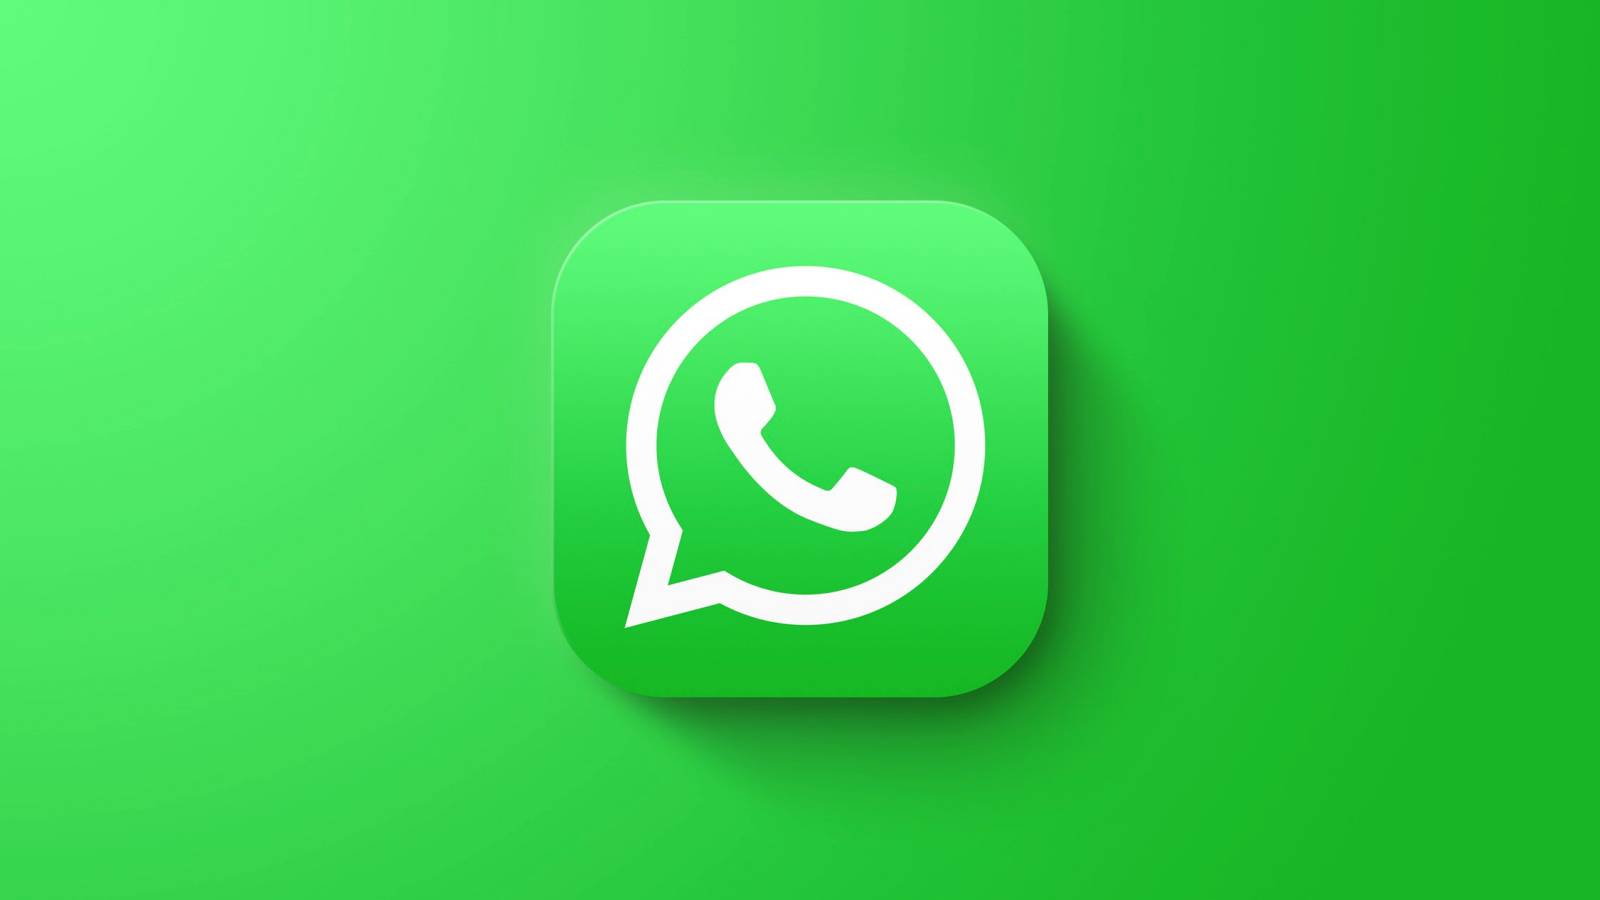 WhatsApp FARA exponerade många rumäner